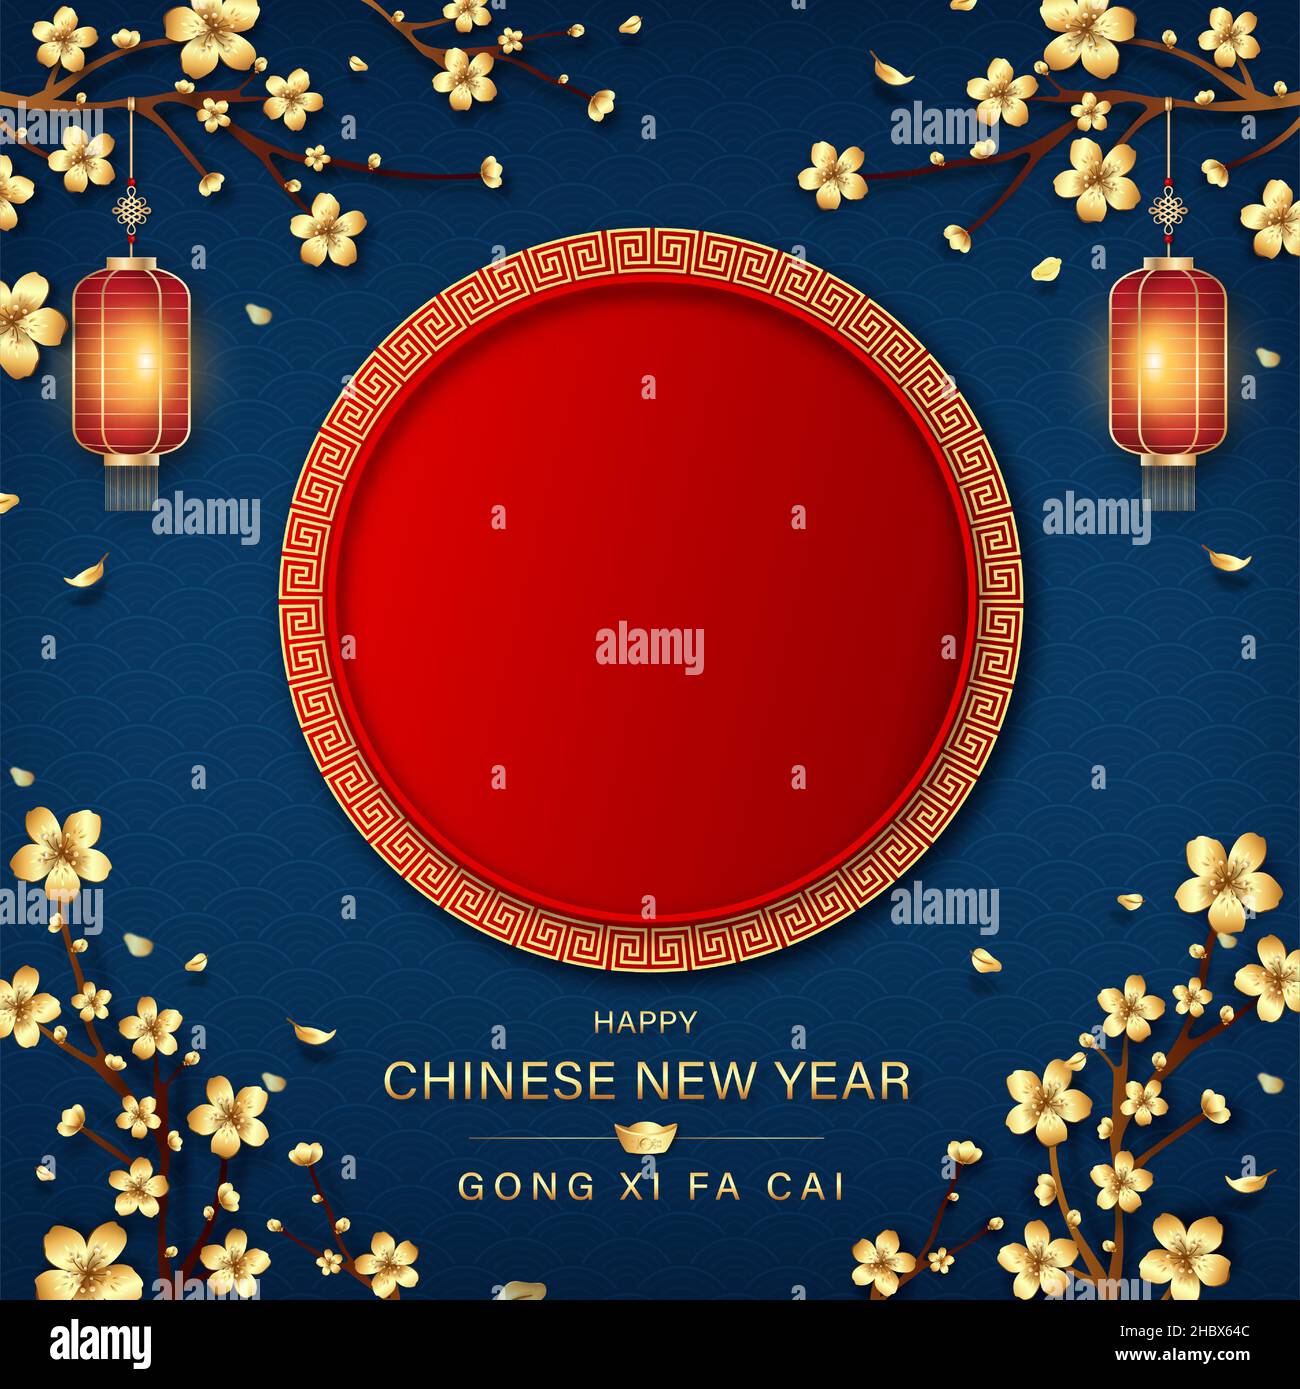 Fond de nouvel an chinois avec espace rouge vide au milieu et traduction de textes étrangers comme vous souhaitant agrandir votre richesse Illustration de Vecteur